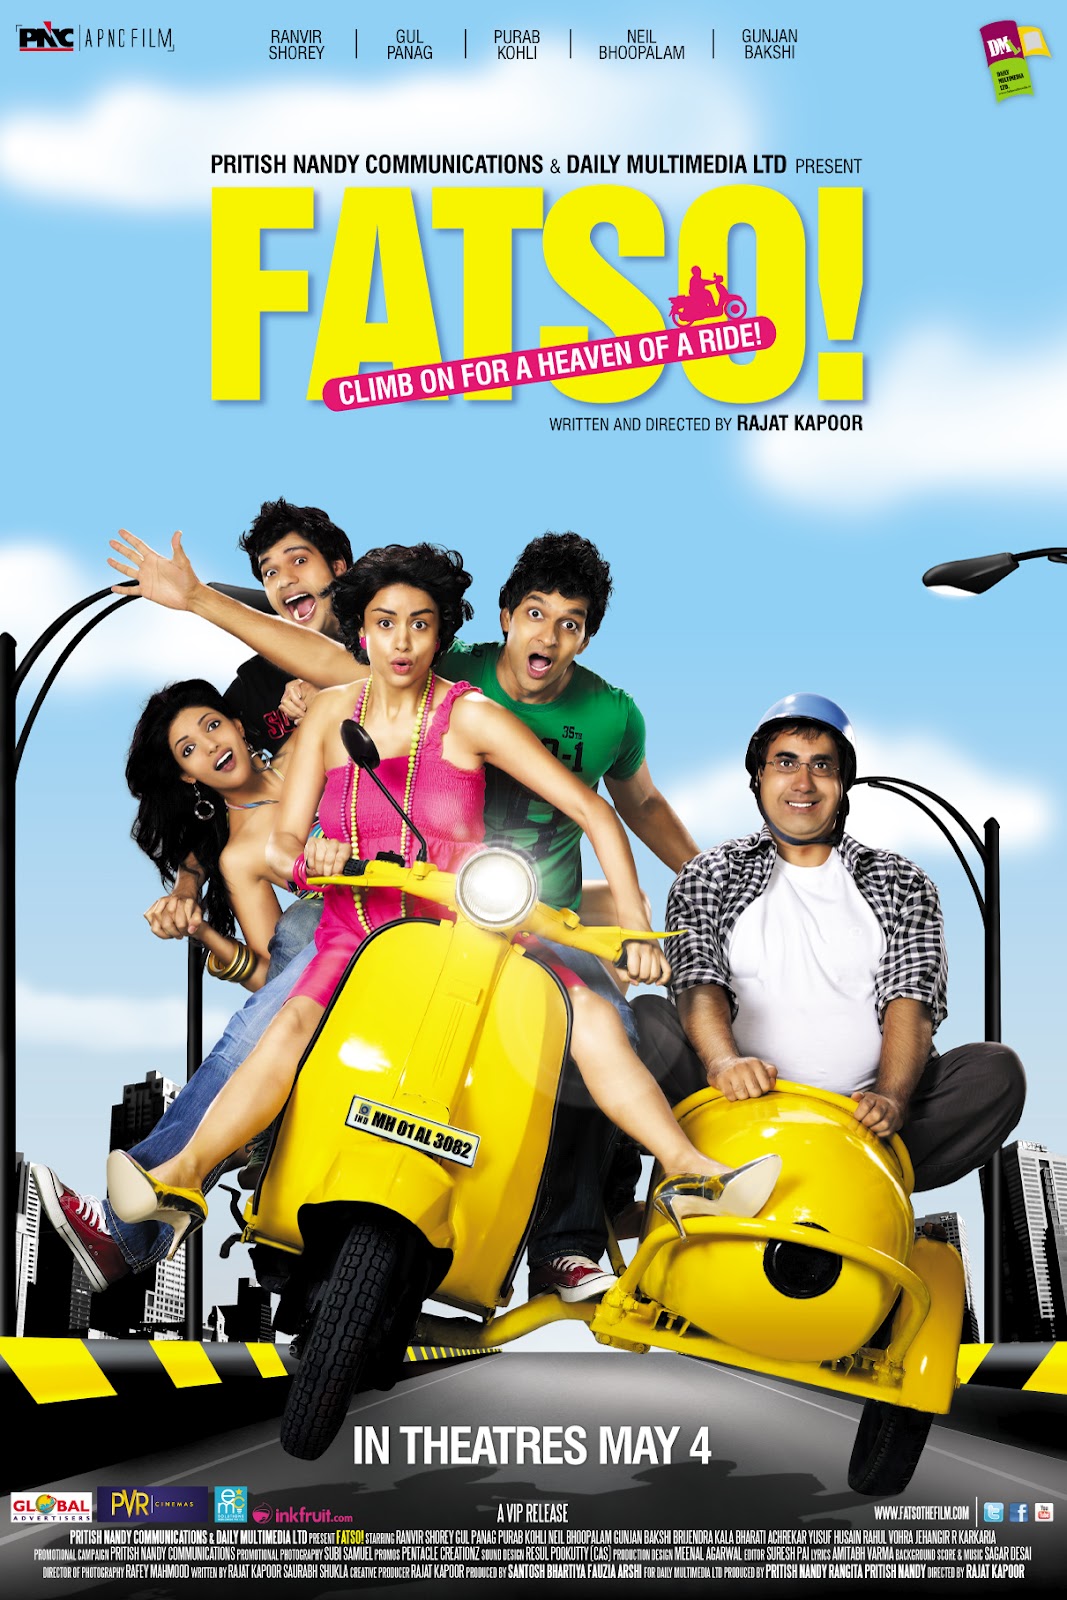 Bharati Achrekar در صحنه فیلم سینمایی Fatso! به همراه Gul Panag، Ranvir Shorey، Neil Bhoopalam و Purab Kohli